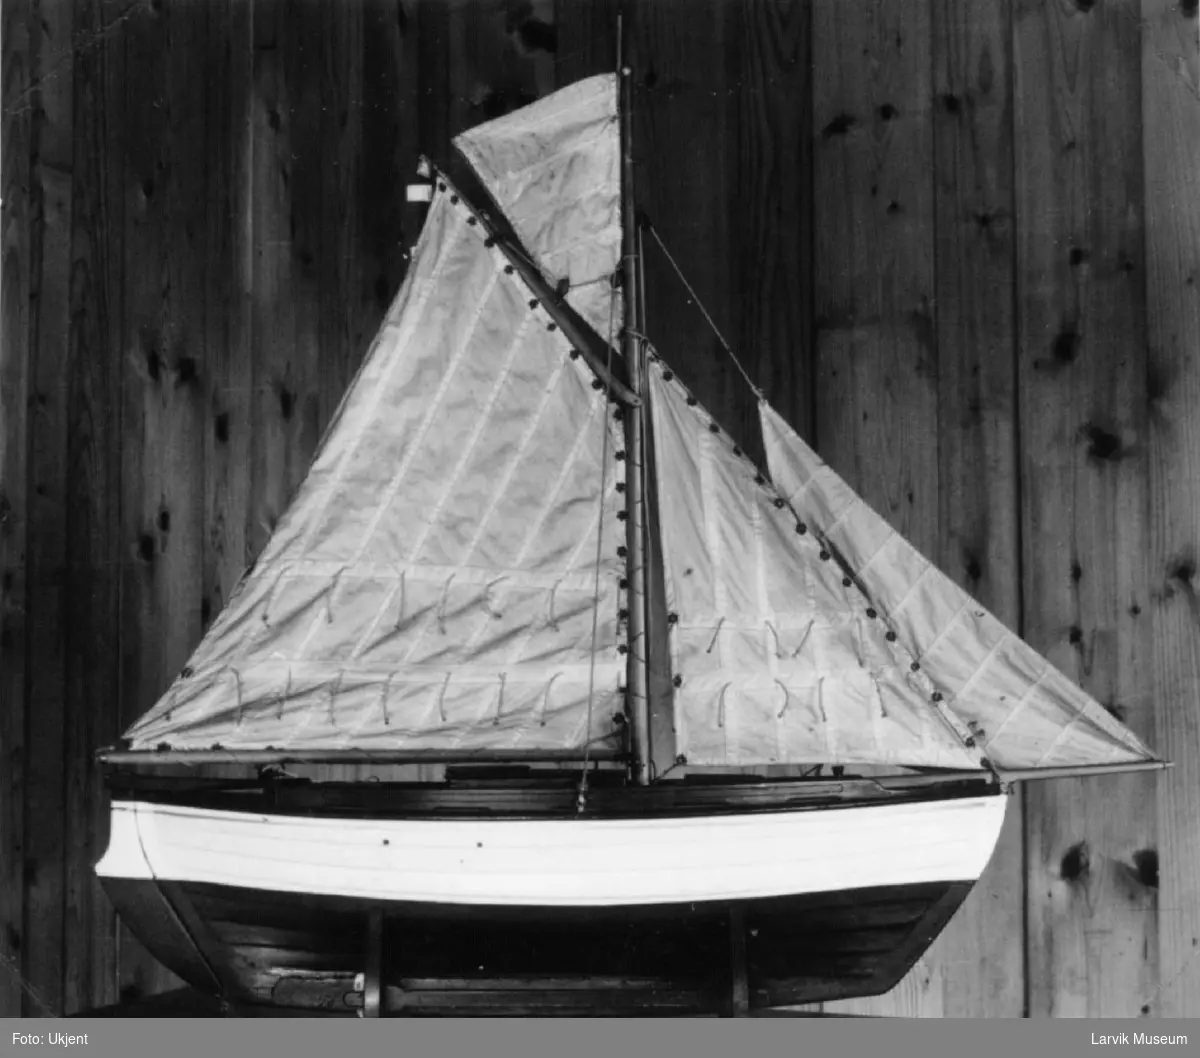 Modell av Tenviksbåt - "Stormtusten" med seil